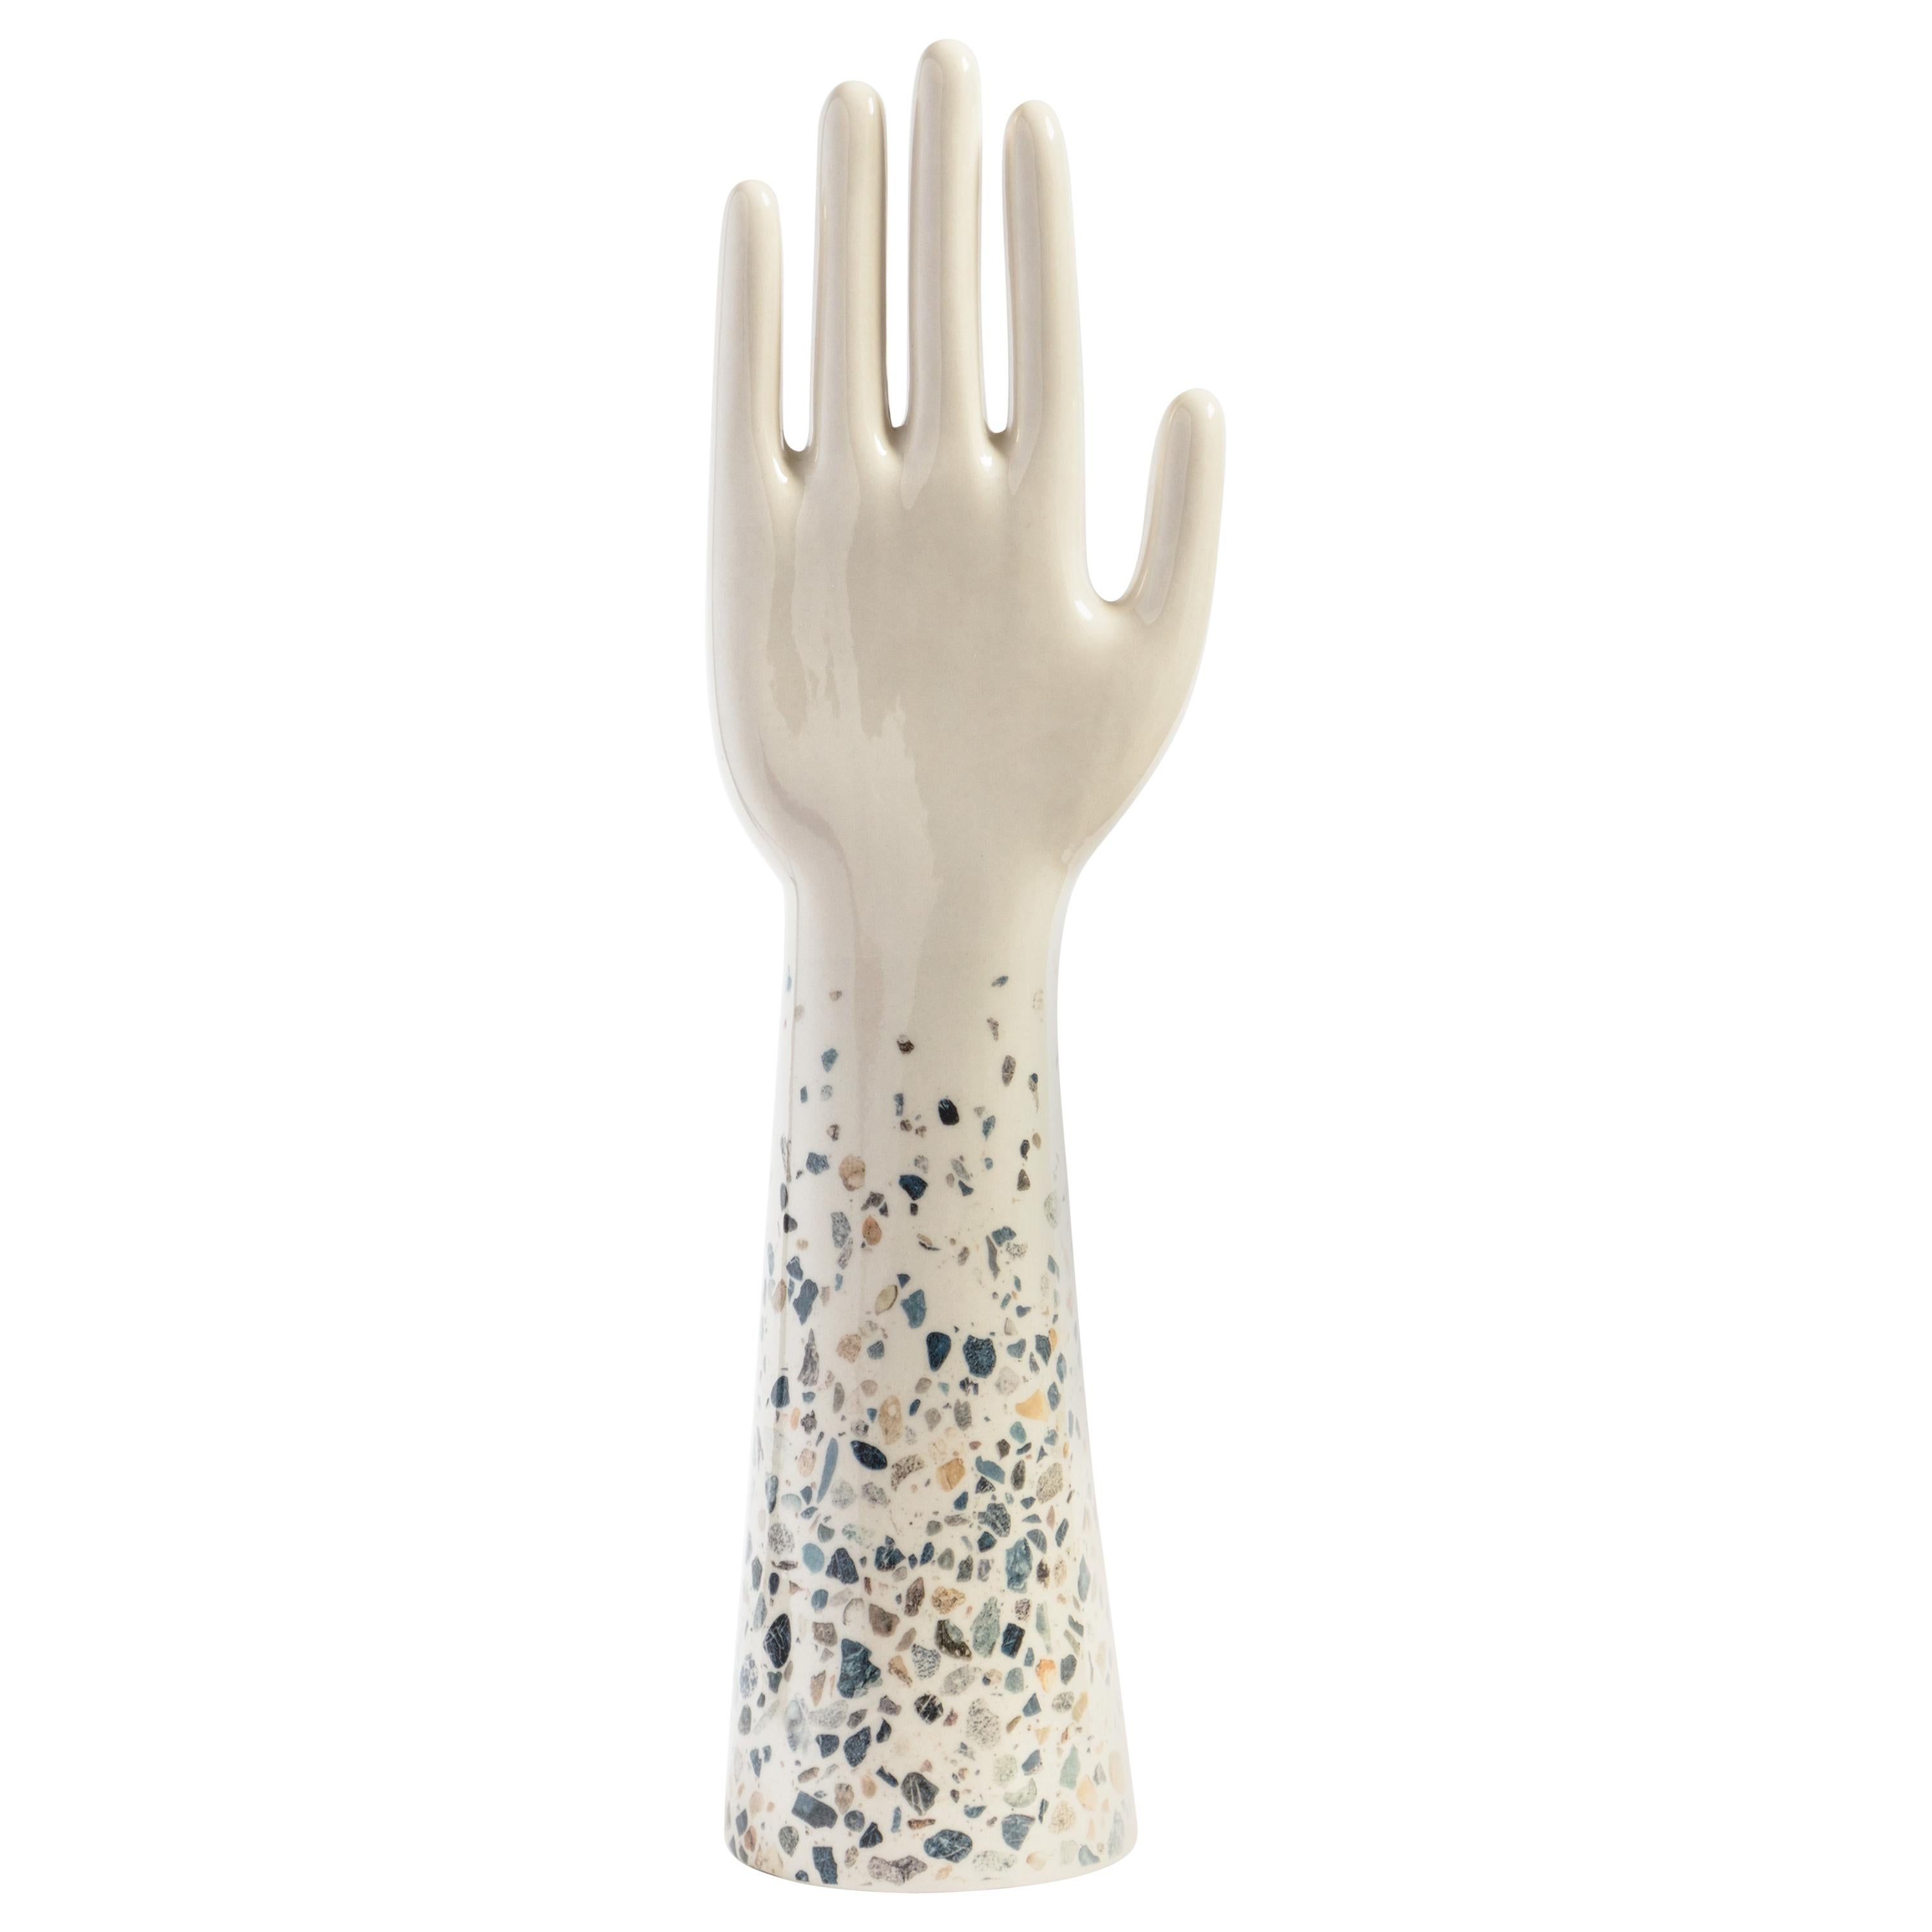 Anatomica, Porcelain Hand with Terrazzo Veneziano by Vito Nesta For Sale